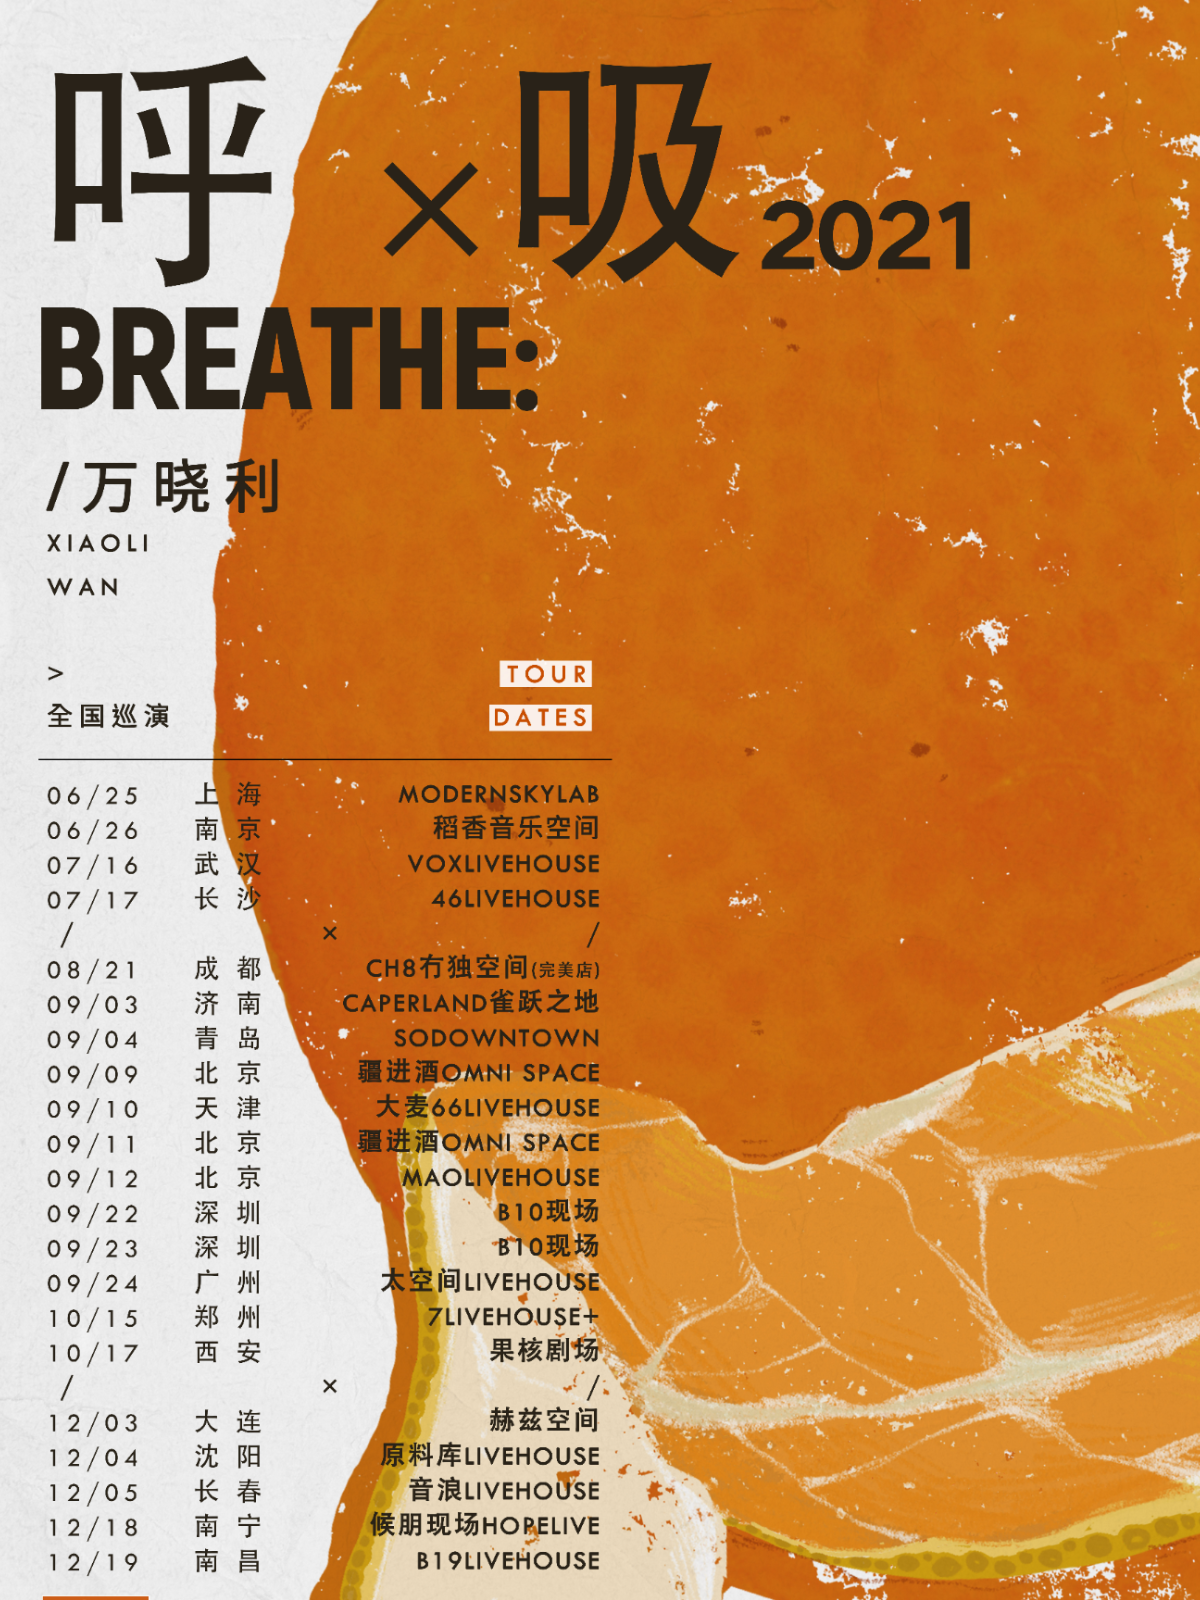 万晓利「呼吸2021」2021巡演—北京站